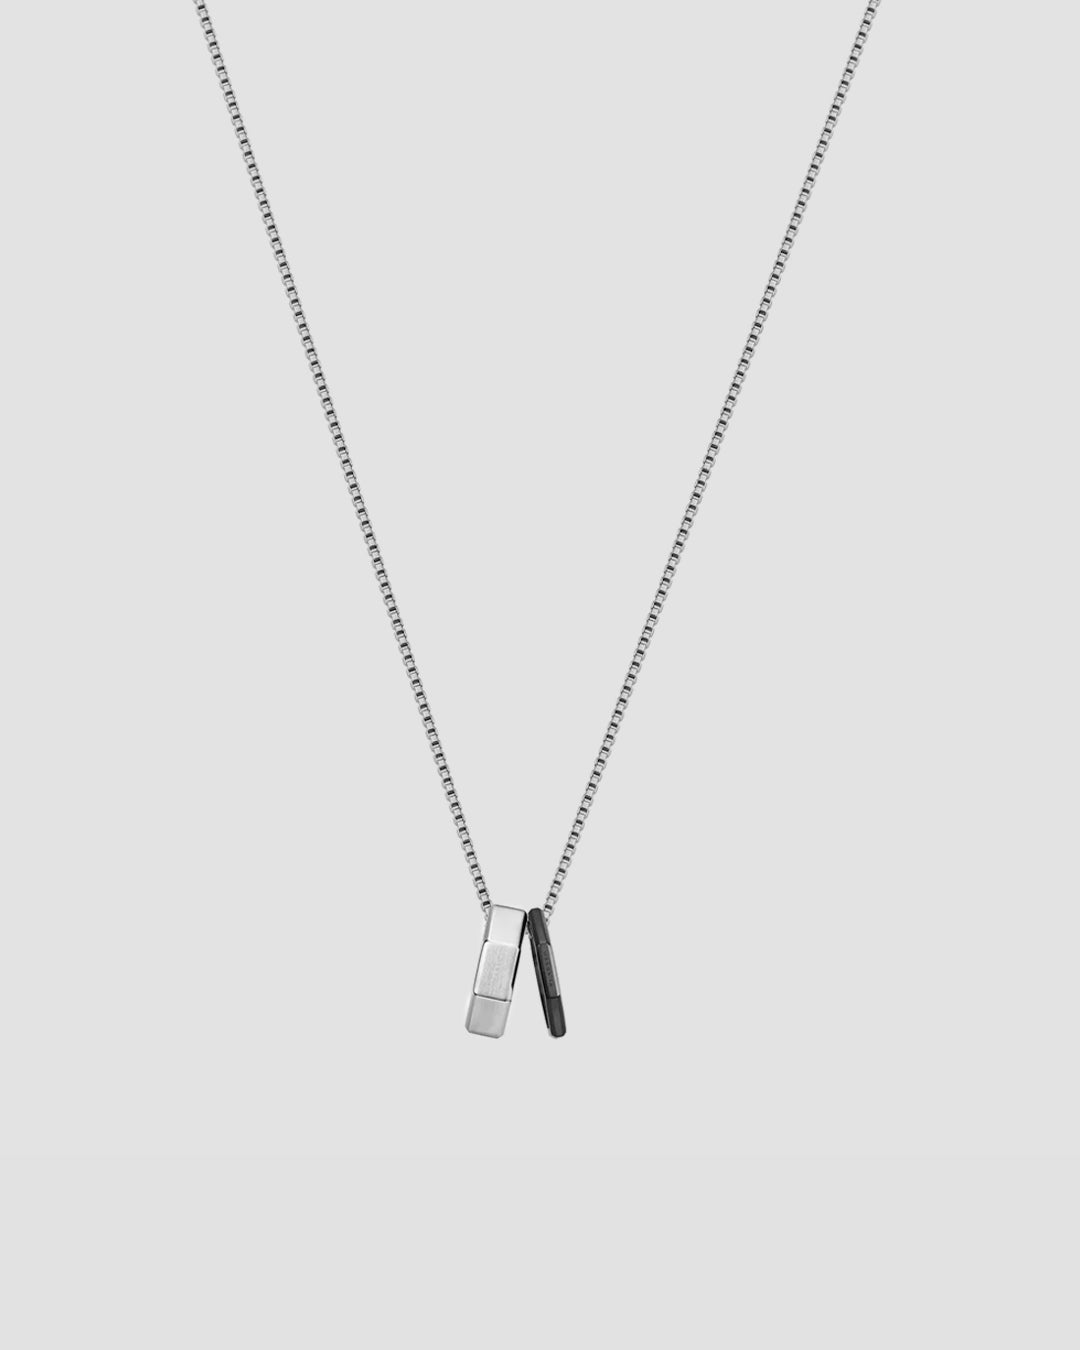 KLASSE 14 Double Okto Man Necklace - Silver / Black